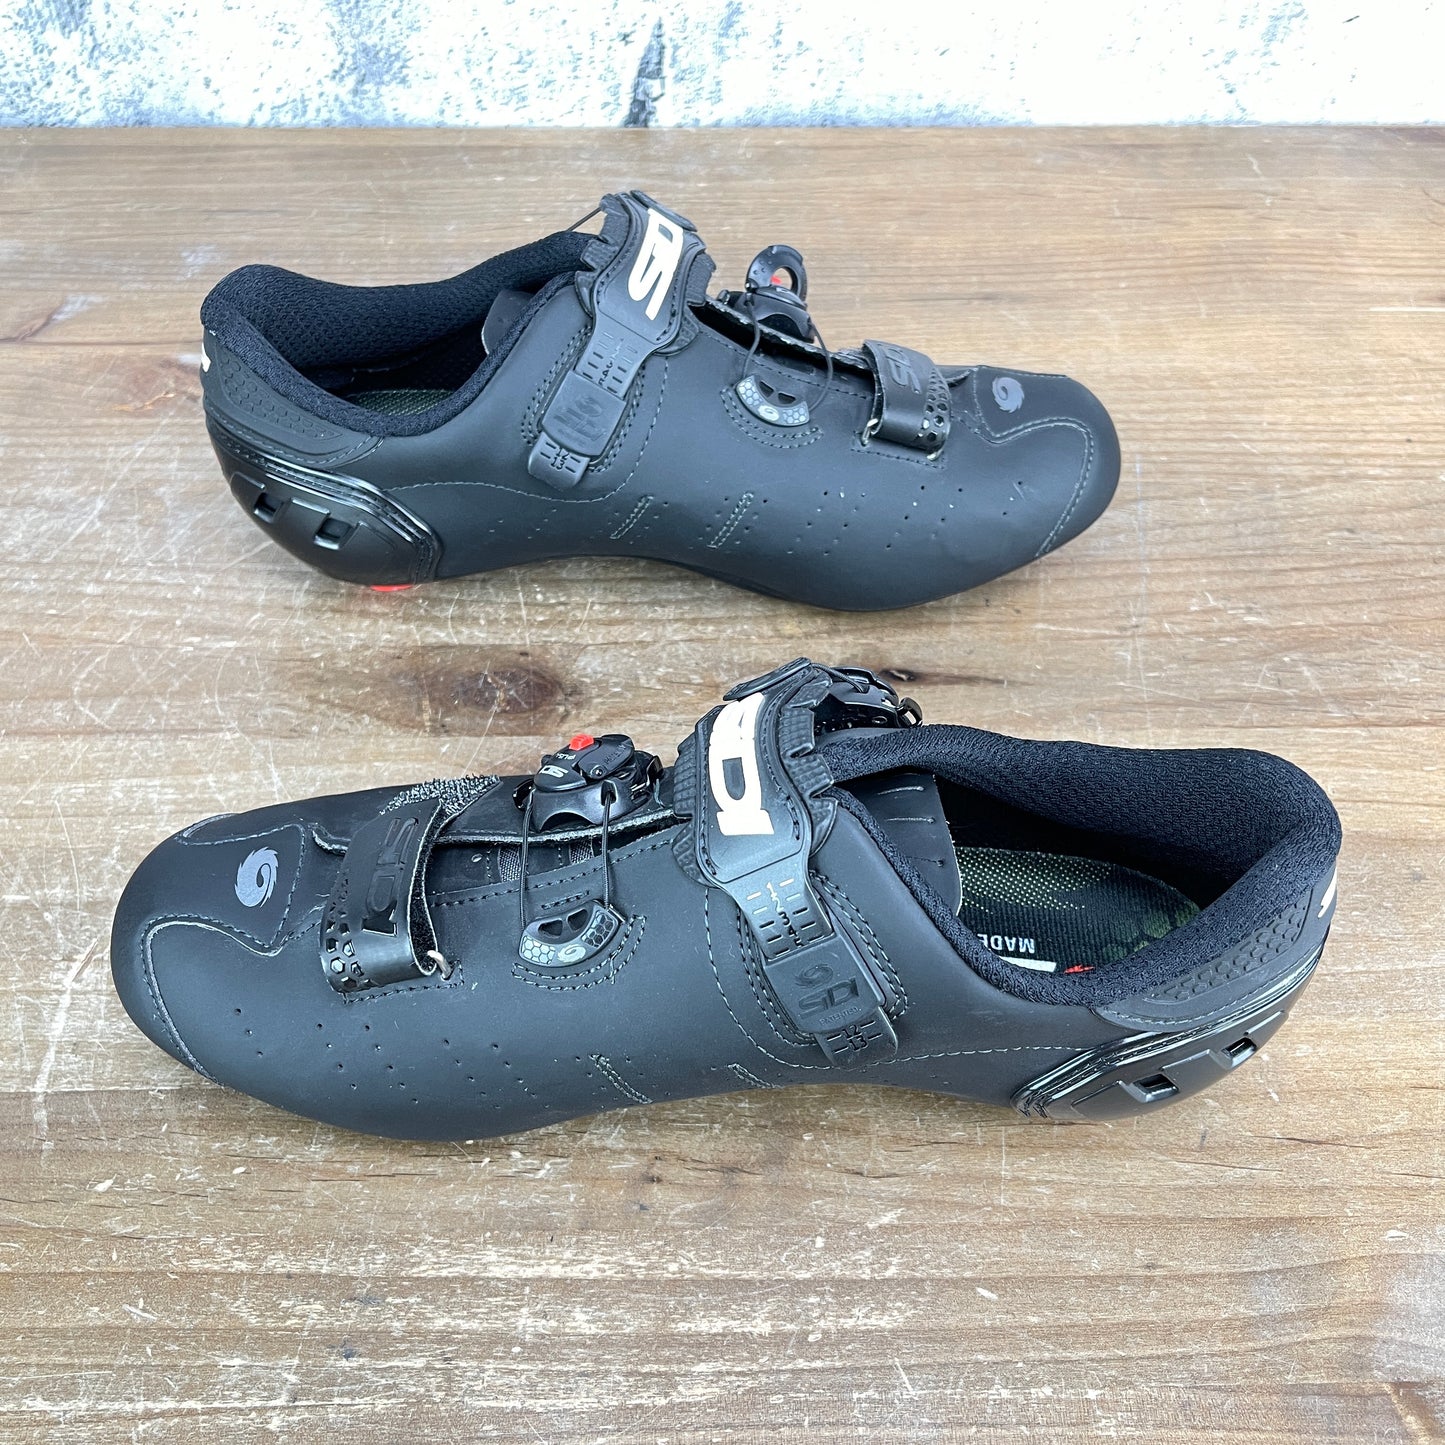 New! Sidi Ergo Carbon 5 Men's 42 (EU) 8 (US) Road Cycling Shoes 3-Bolt